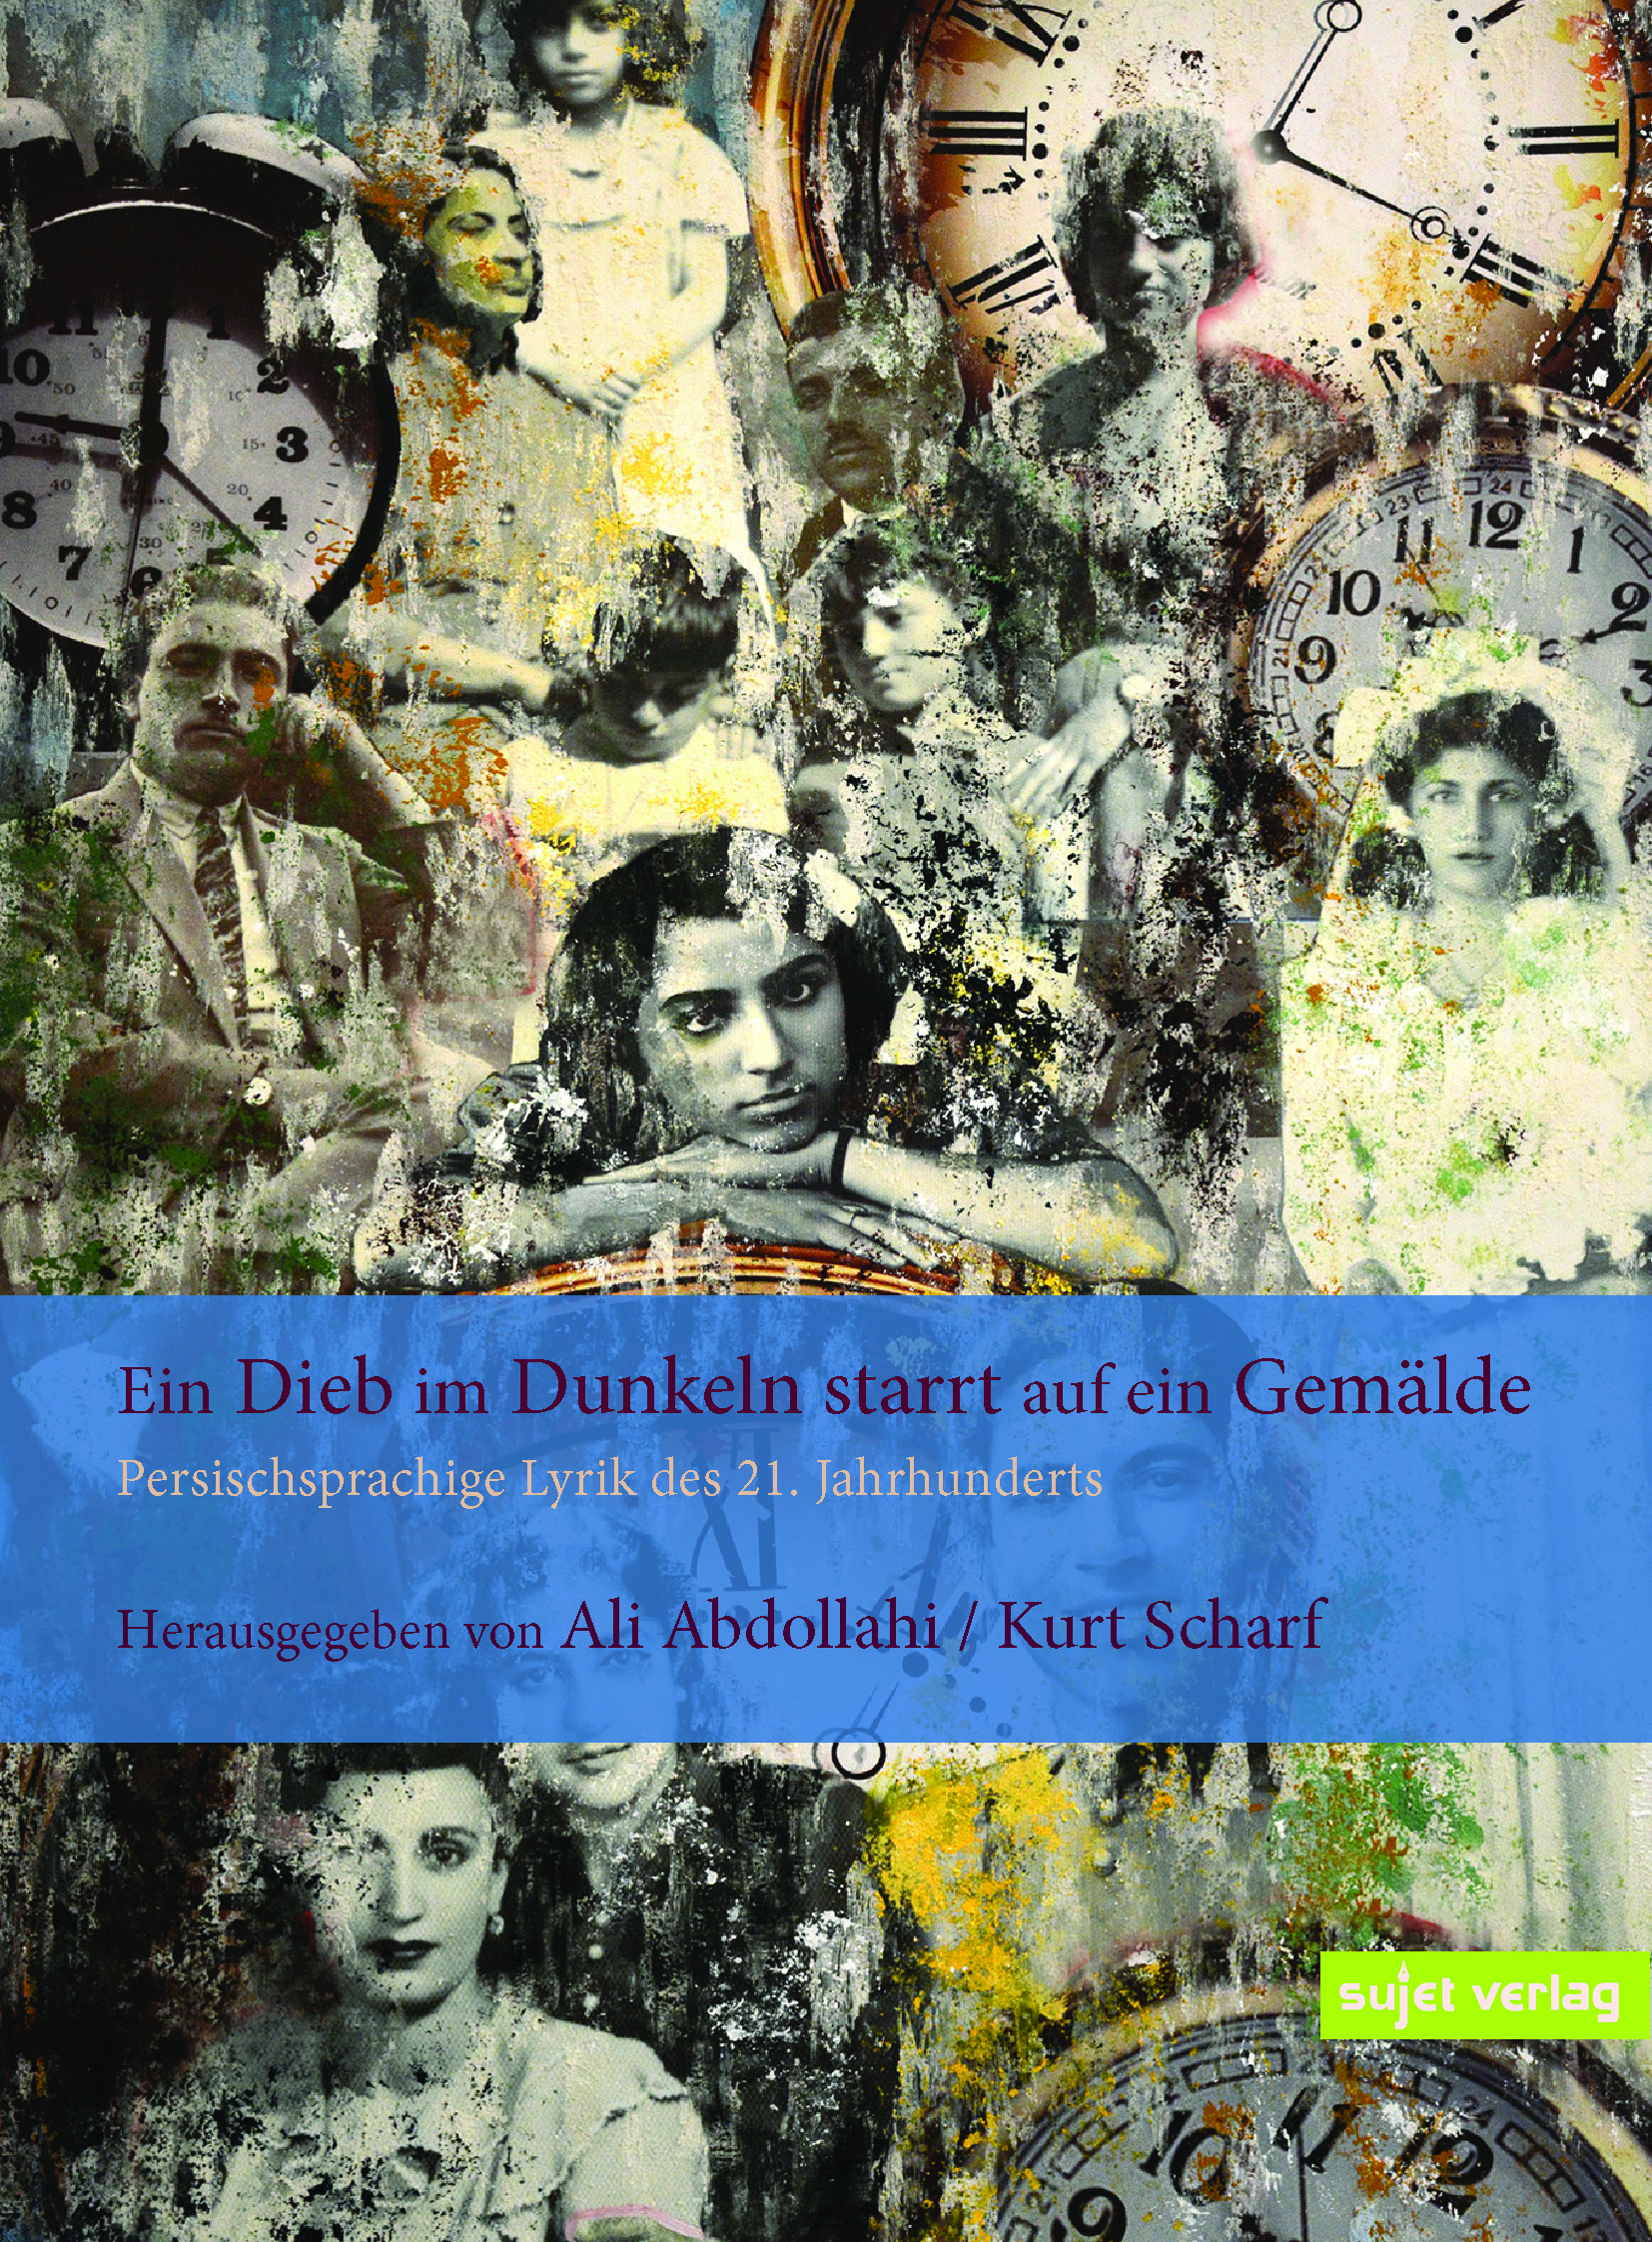 Cover von Ali Abdollahi, Kurt Scharf (Hrsg.), „Ein Dieb im Dunkeln starrt auf ein Gemälde“, Persischsprachige Lyrik des 21. Jahrhunderts, Sujet Verlag 2021; Quelle: Verlag